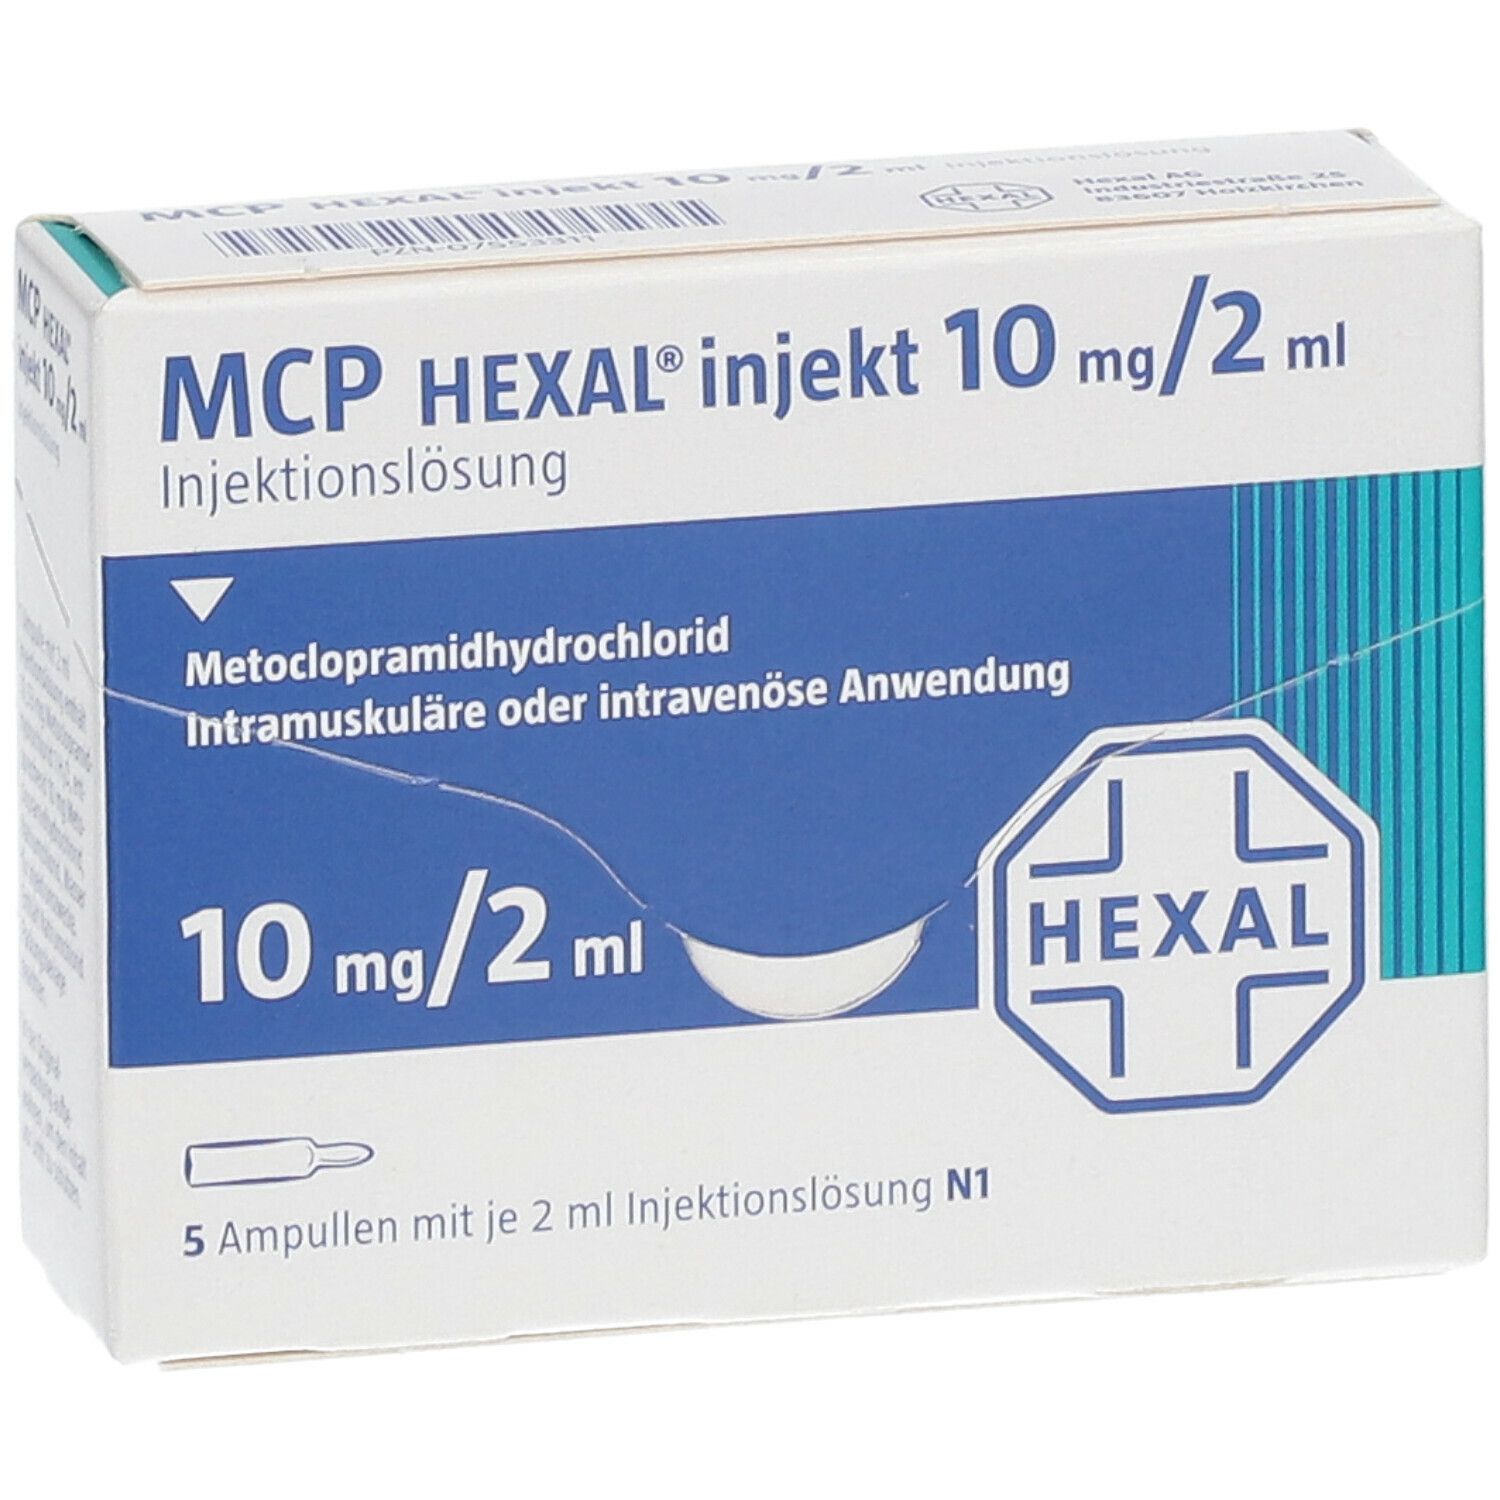 MCP HEXAL® injekt 10 mg/2 ml